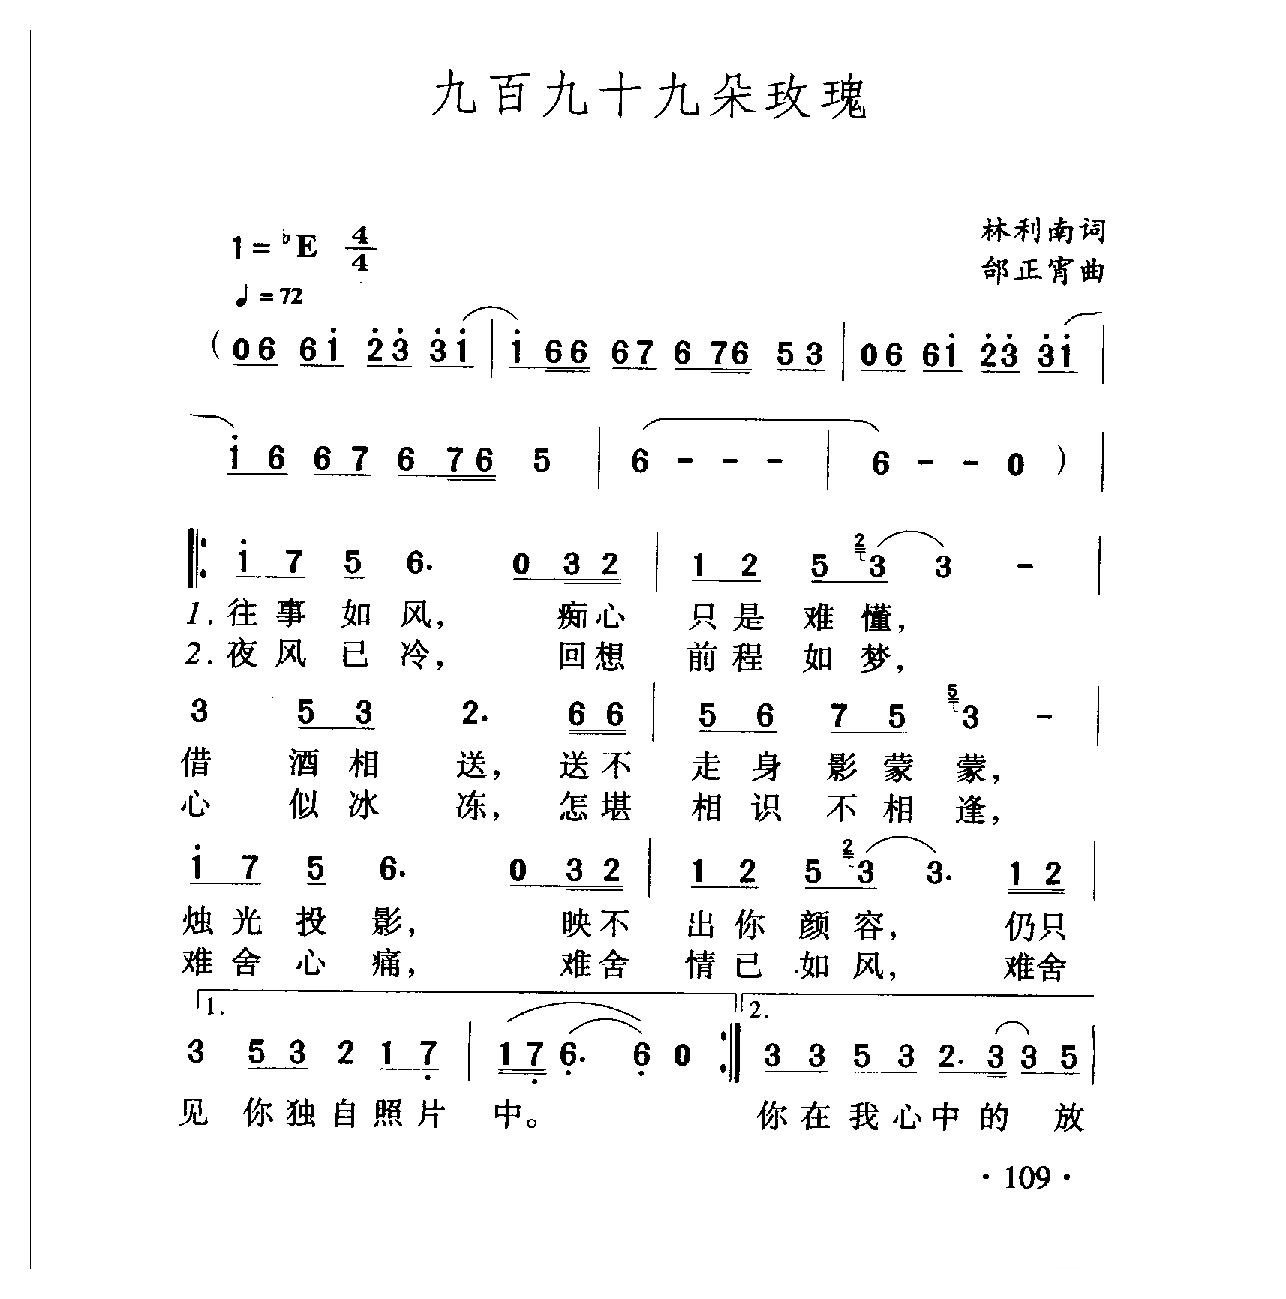 中国名歌[九百九十九朵玫瑰]乐谱